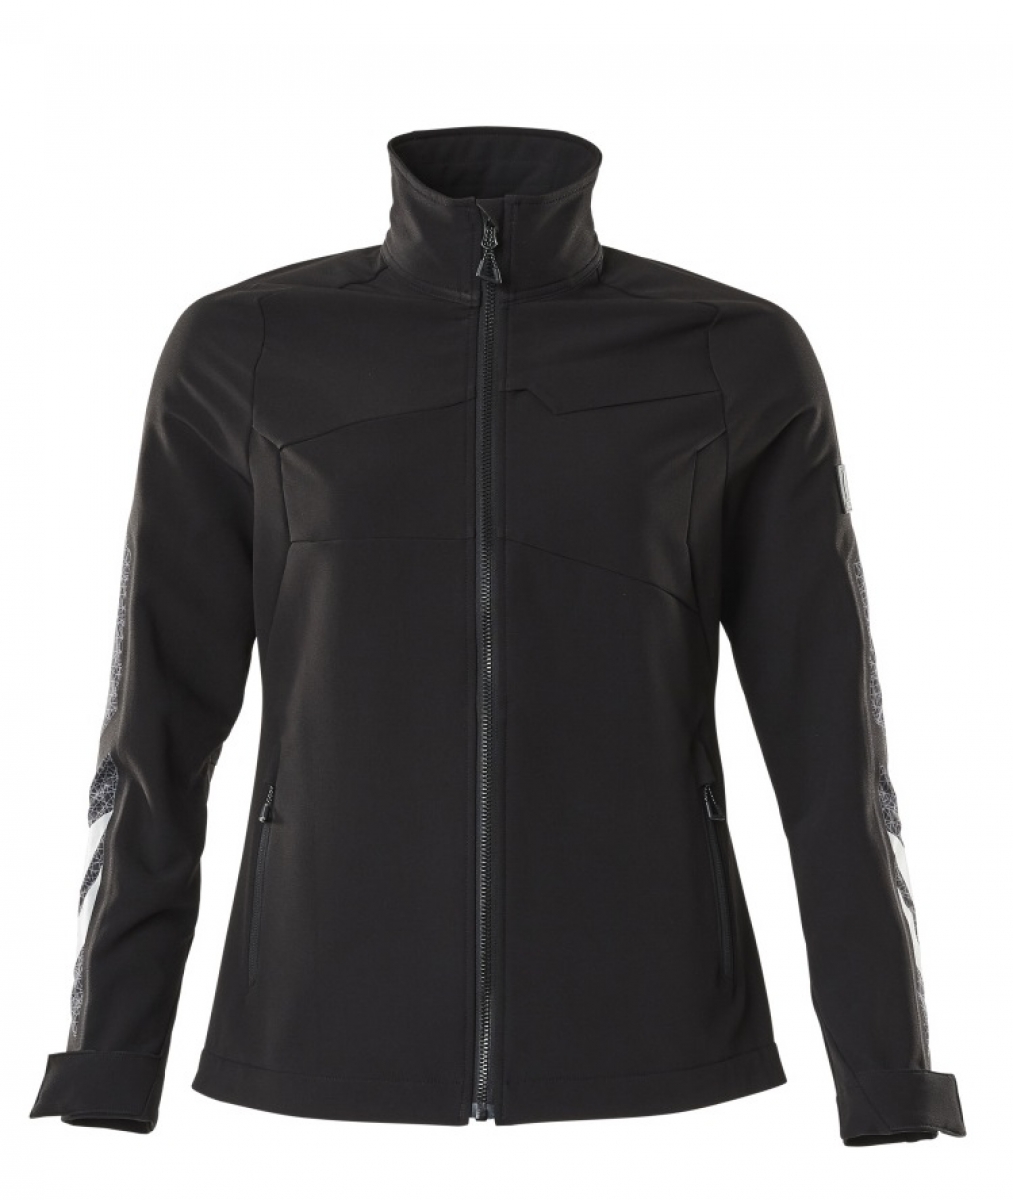 MASCOT-Workwear, Klteschutz, Damen-Softshell-Arbeitsjacke, 260 g/m, schwarz